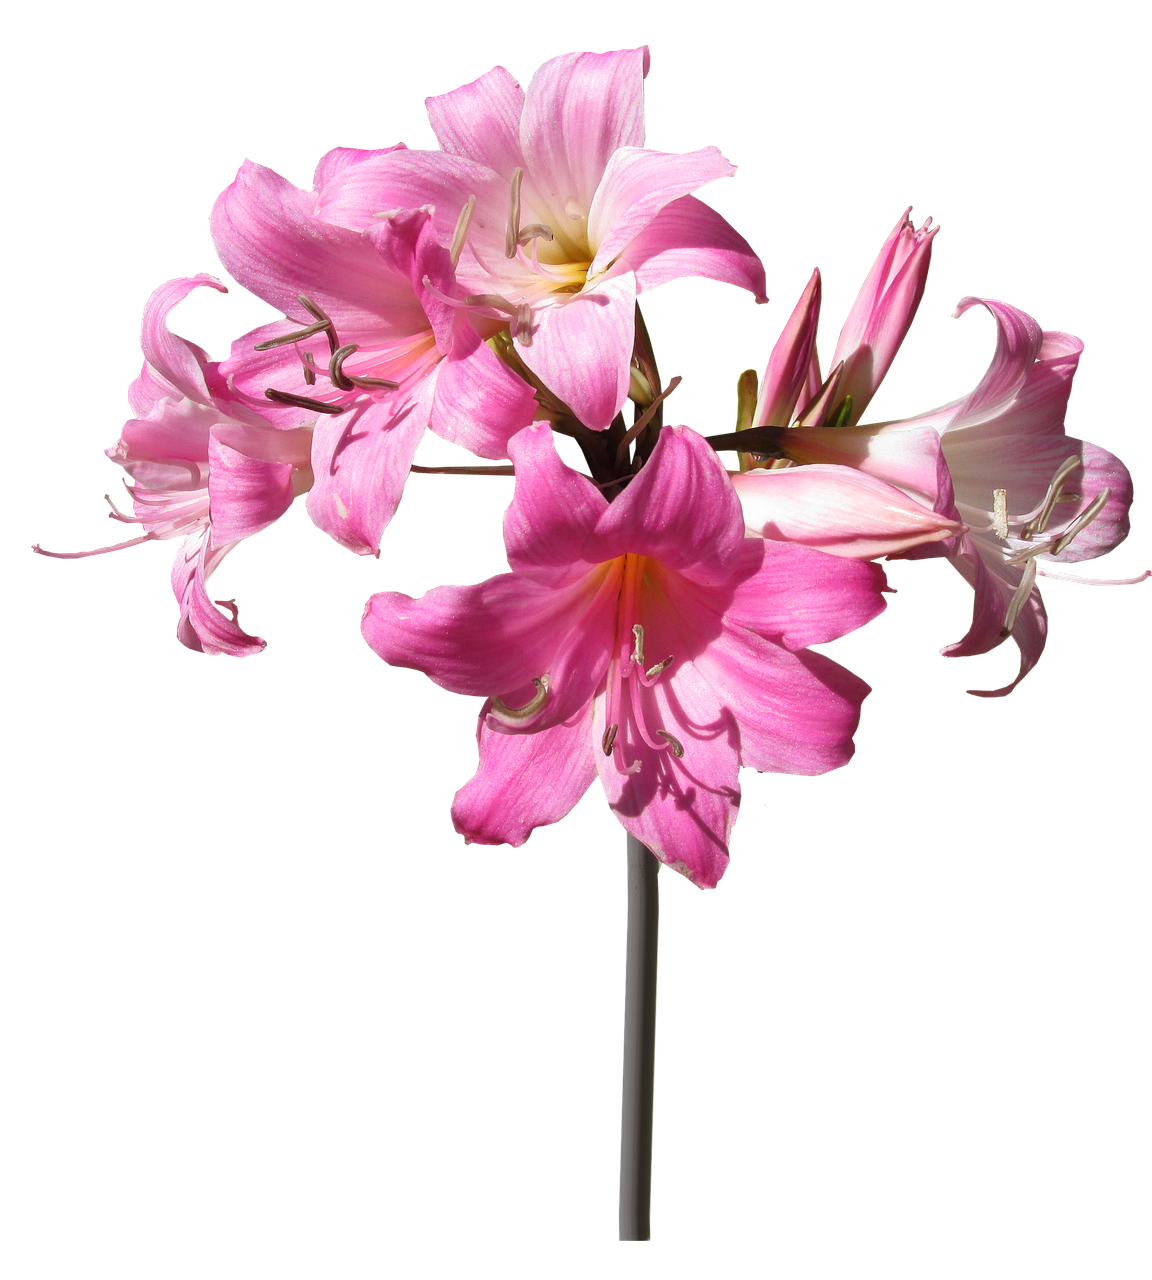 belladonna lily flower free photo